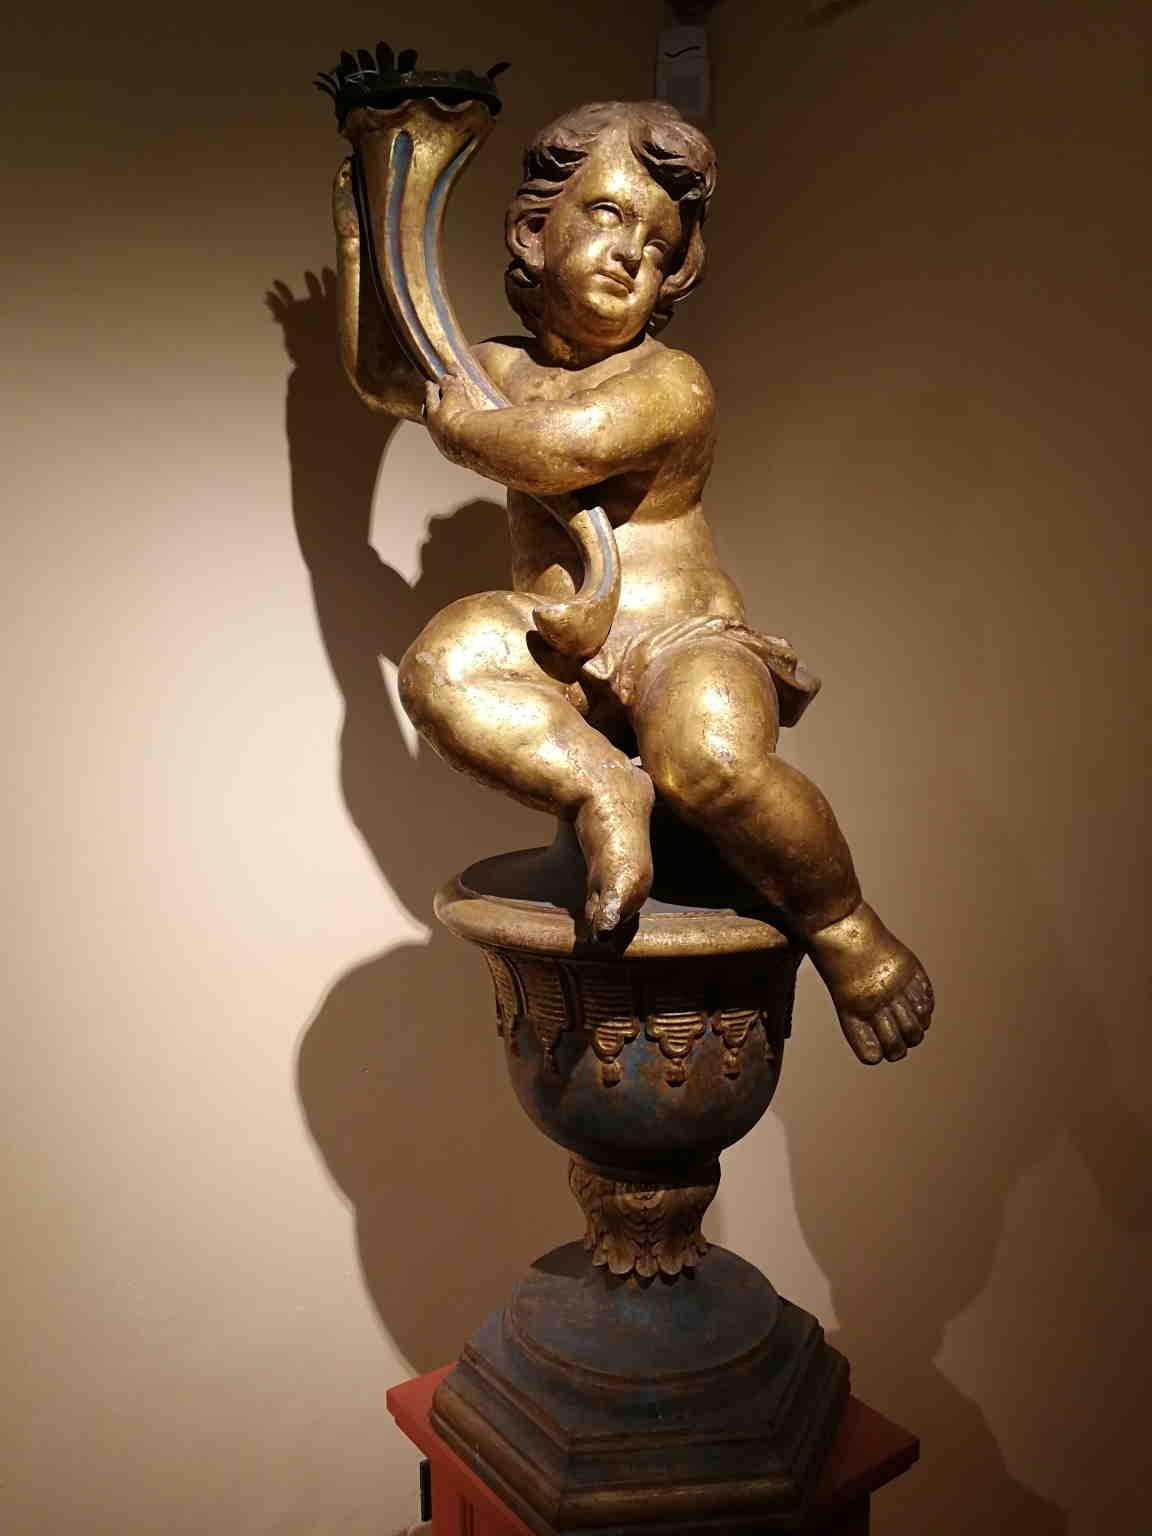 Tuscanischer Barock-Kerzenhalter Nude Putto aus vergoldetem Holz, 17-18 Jahrhundert – Sculpture von Unknown